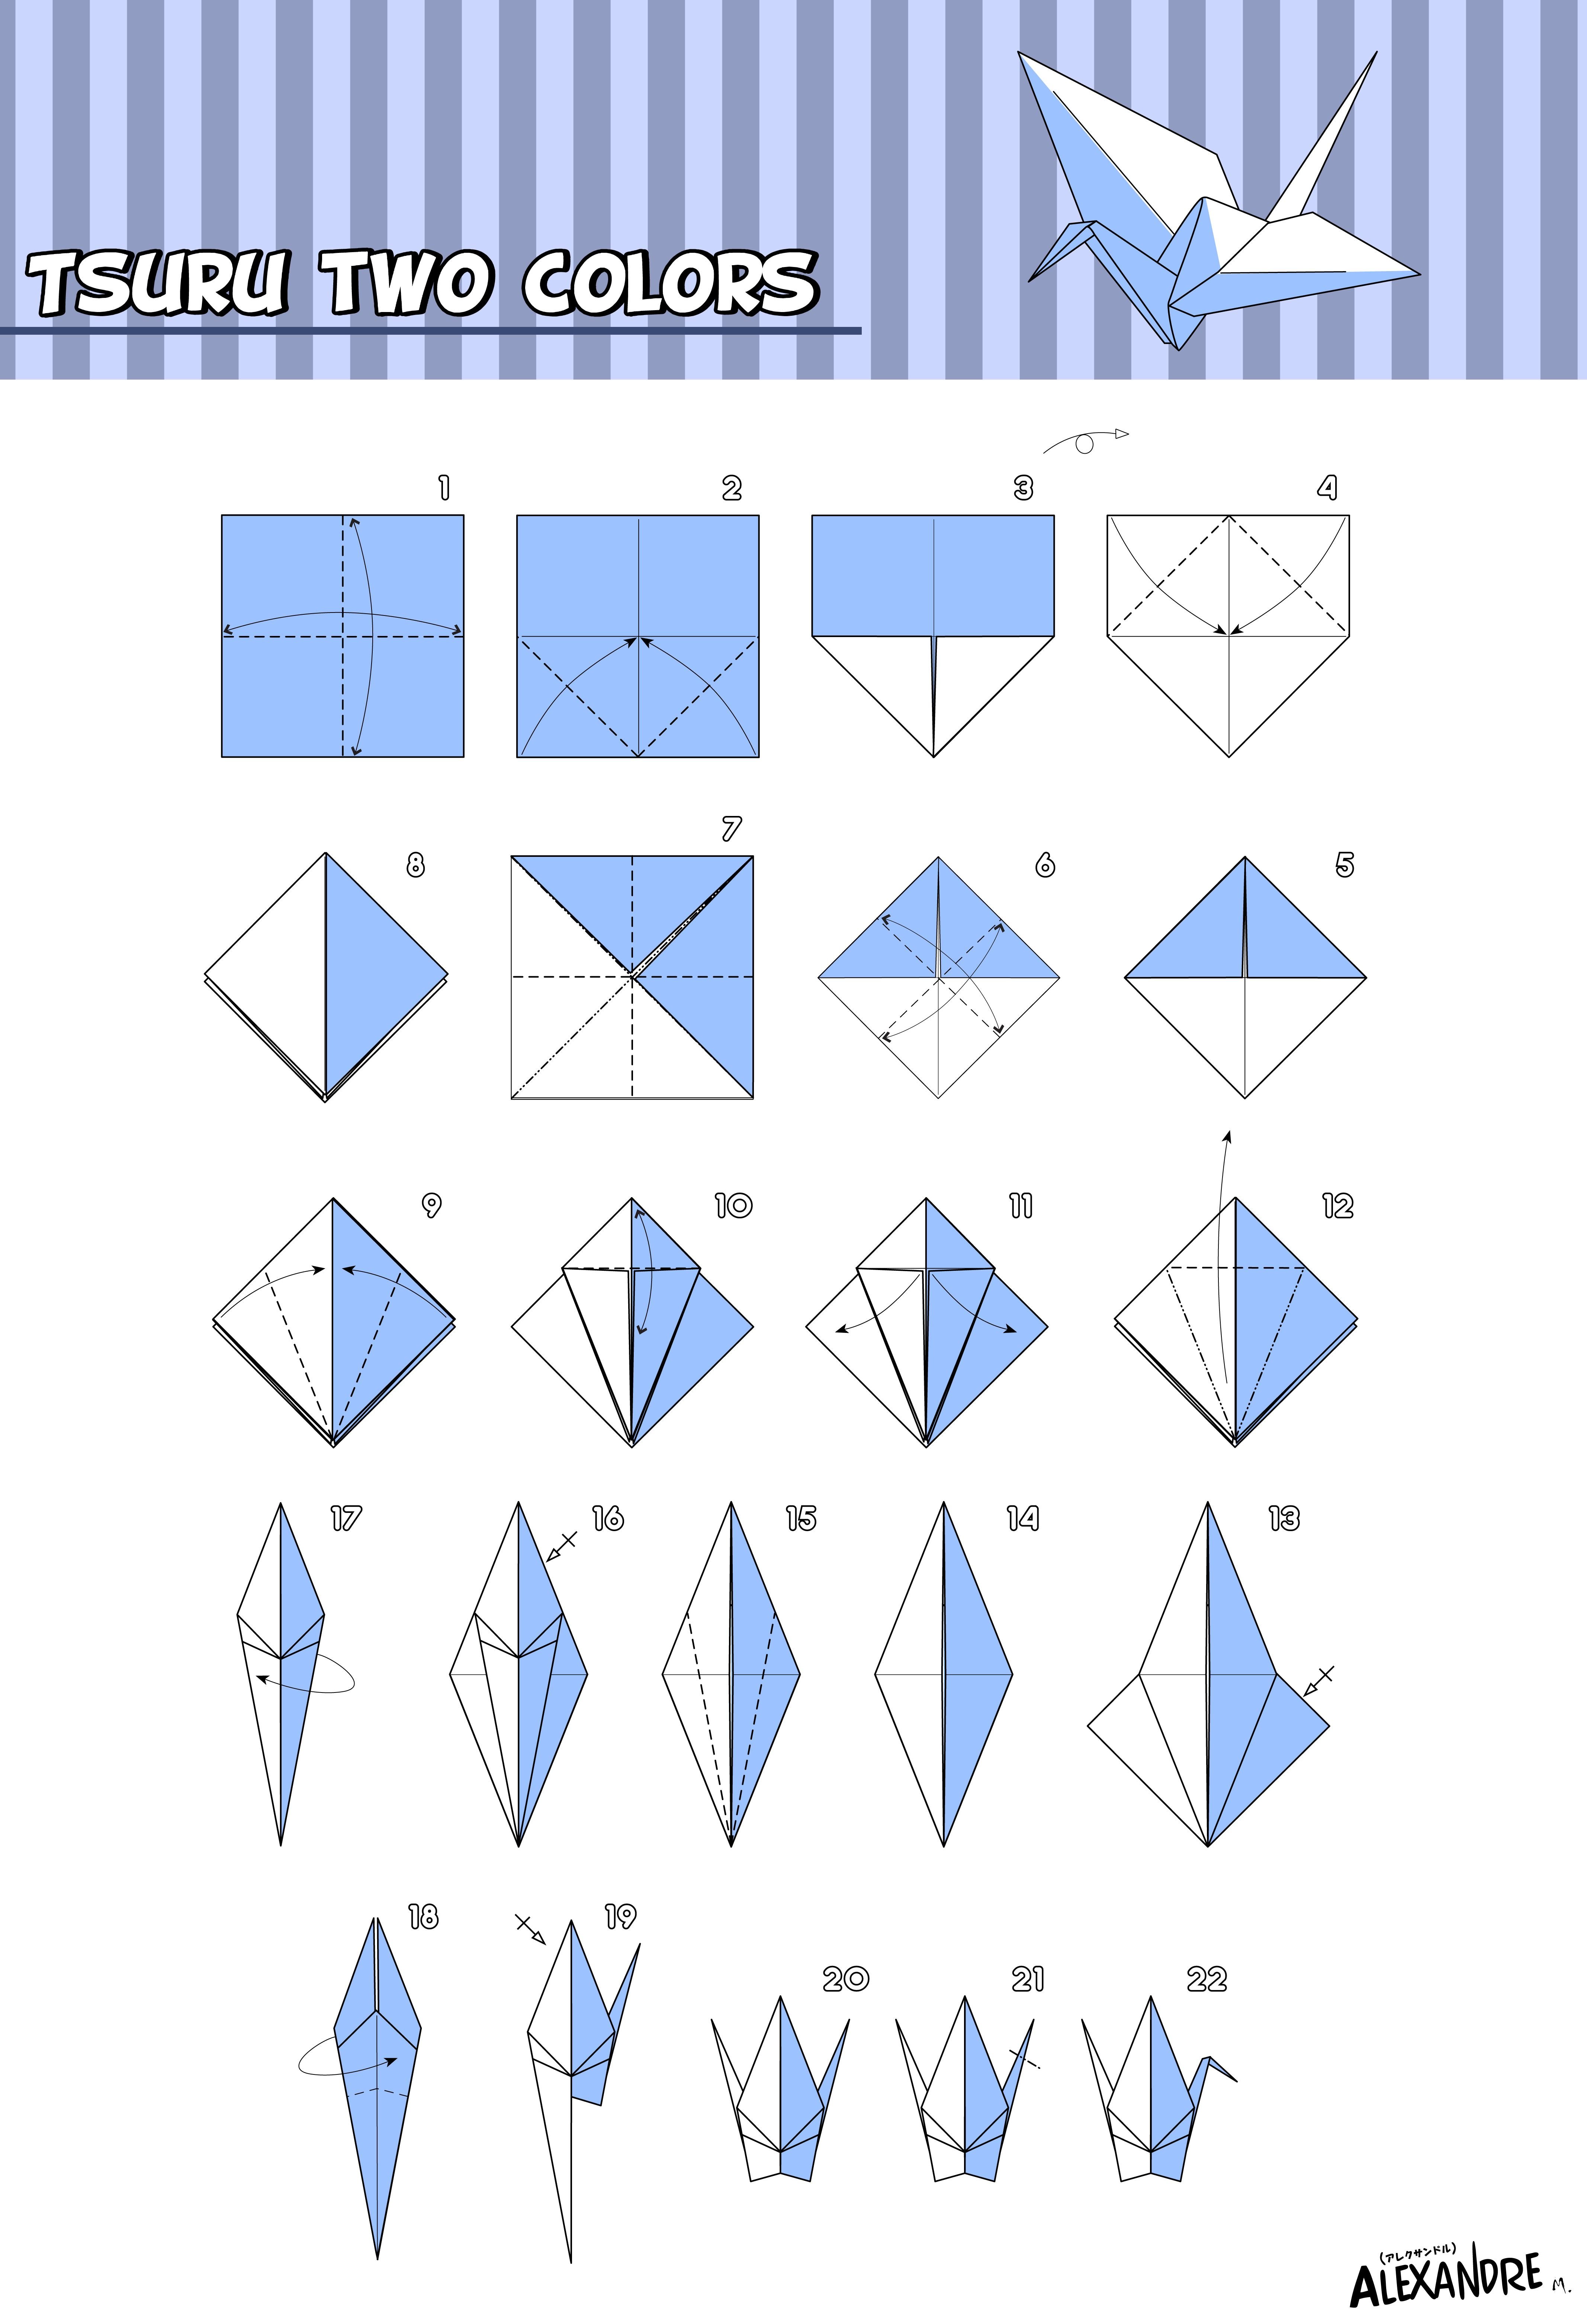 Бумажный журавлик пошагово. Как сложить журавля из бумаги пошагово. Оригами из бумаги для начинающих Журавлик. Схема как сложить журавлика из бумаги. Журавлик Цуру оригами схема.